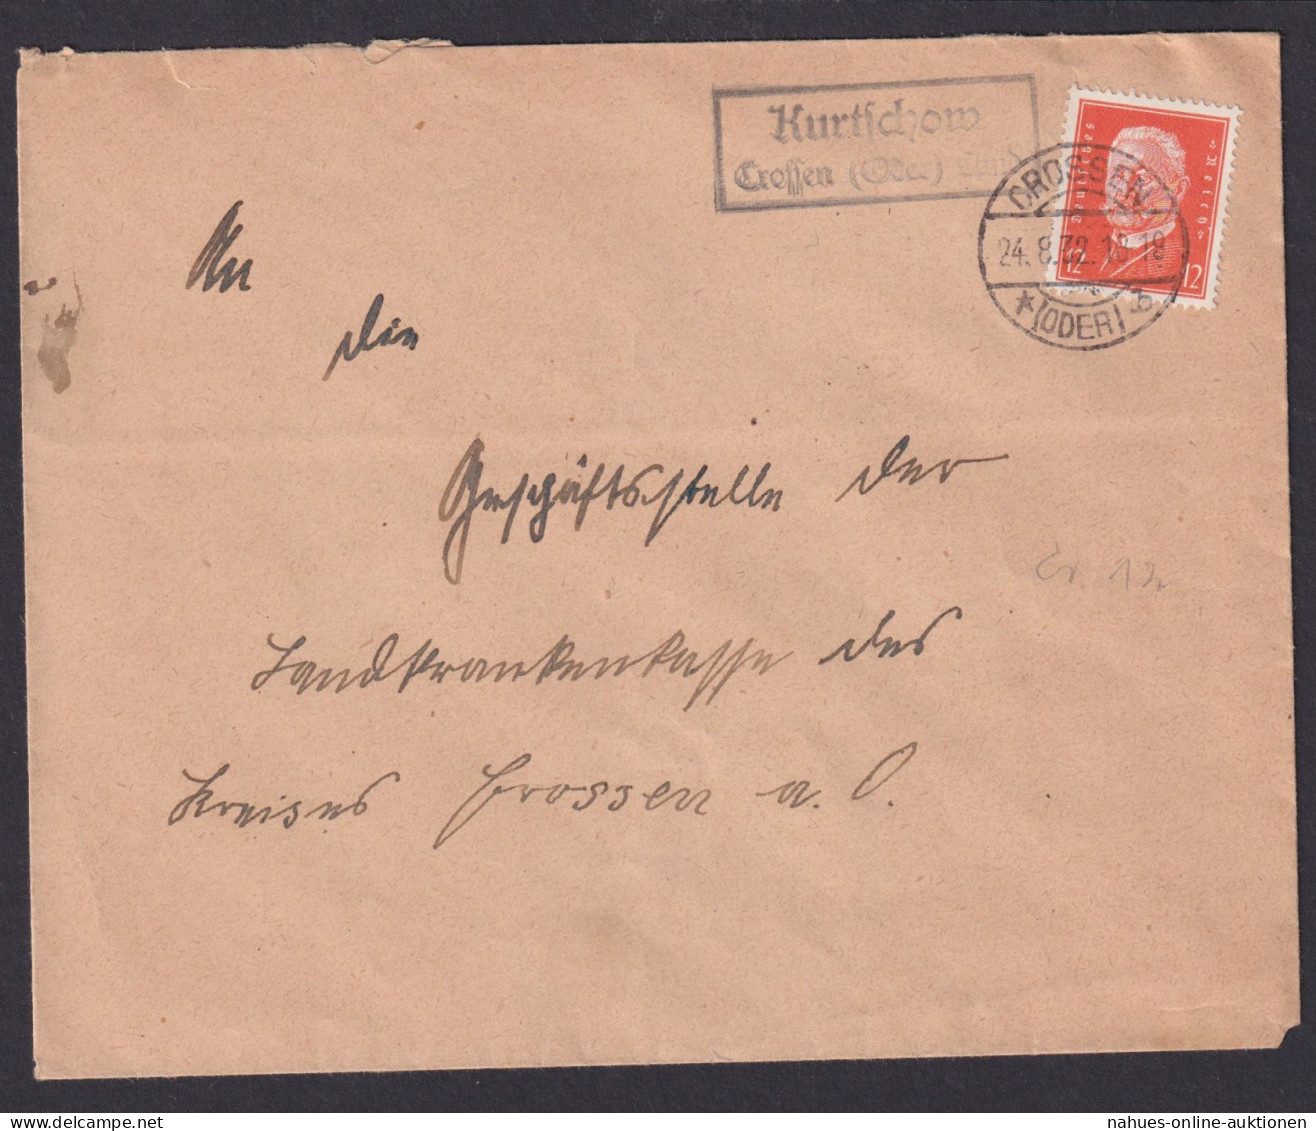 Kurtschow über Crossen Oder Brandenburg Deutsches Reich Brief Landpoststempel - Lettres & Documents